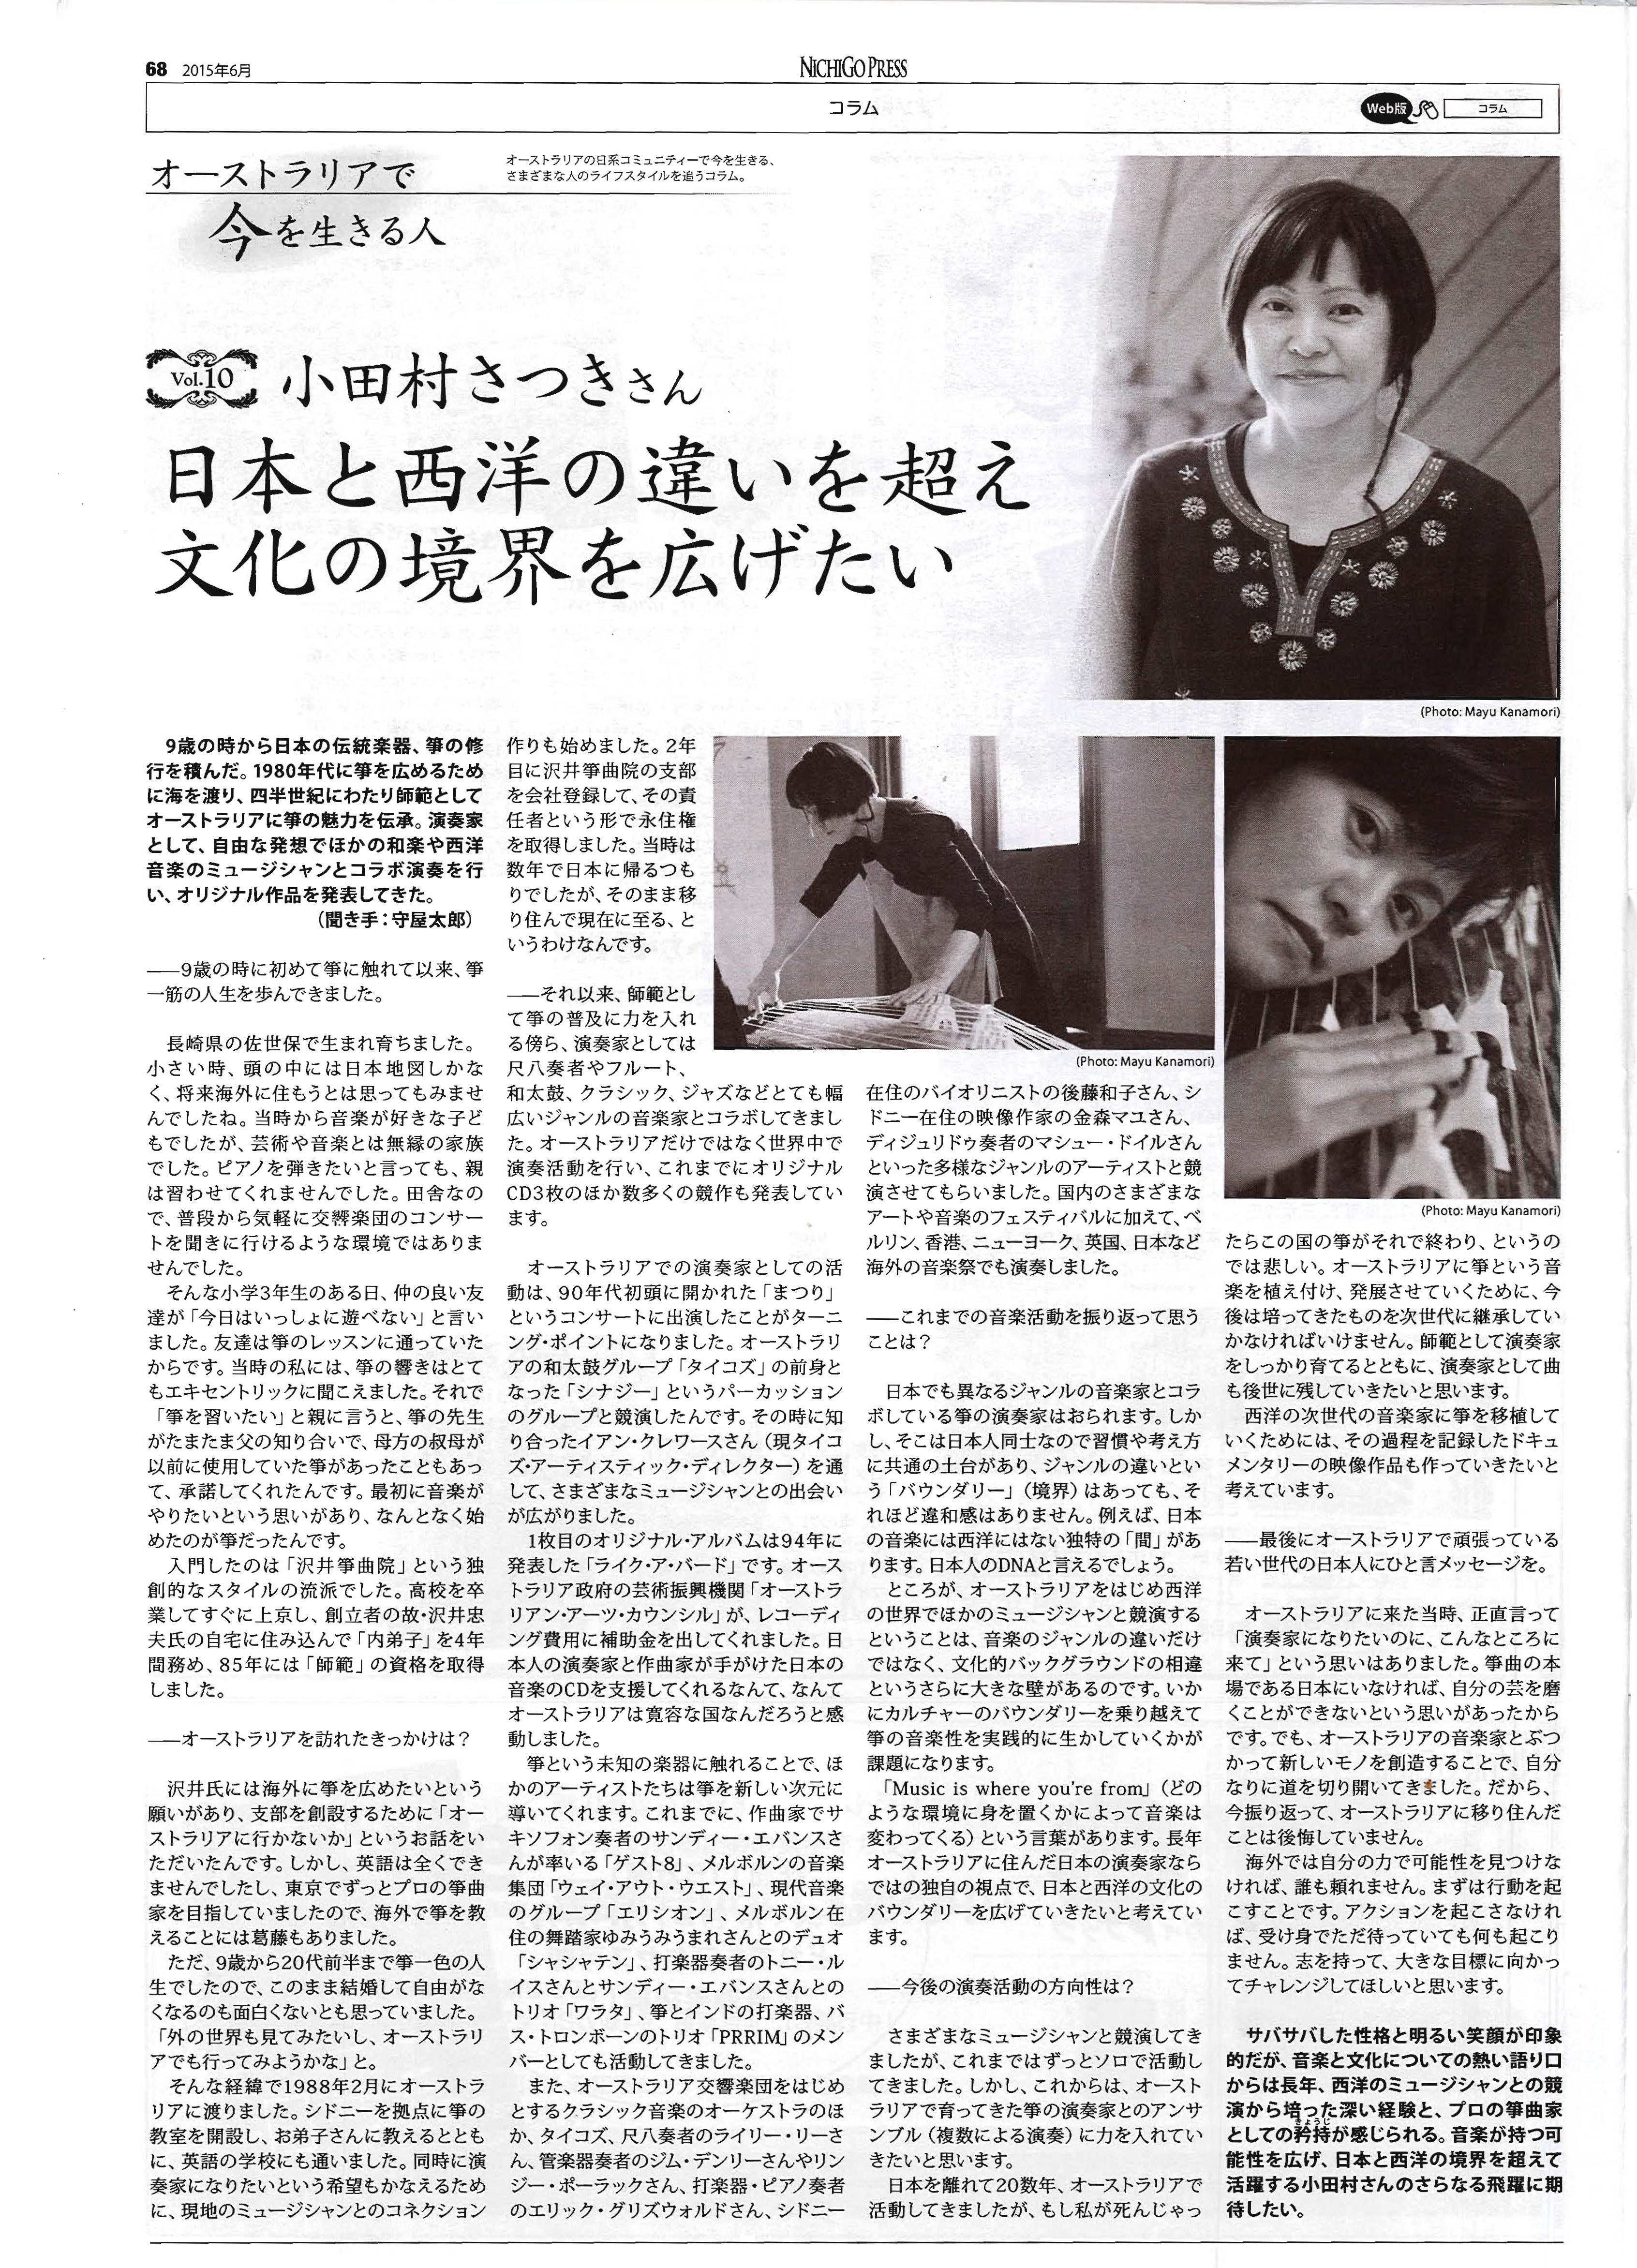 Satsuki Article- Nichigo Press